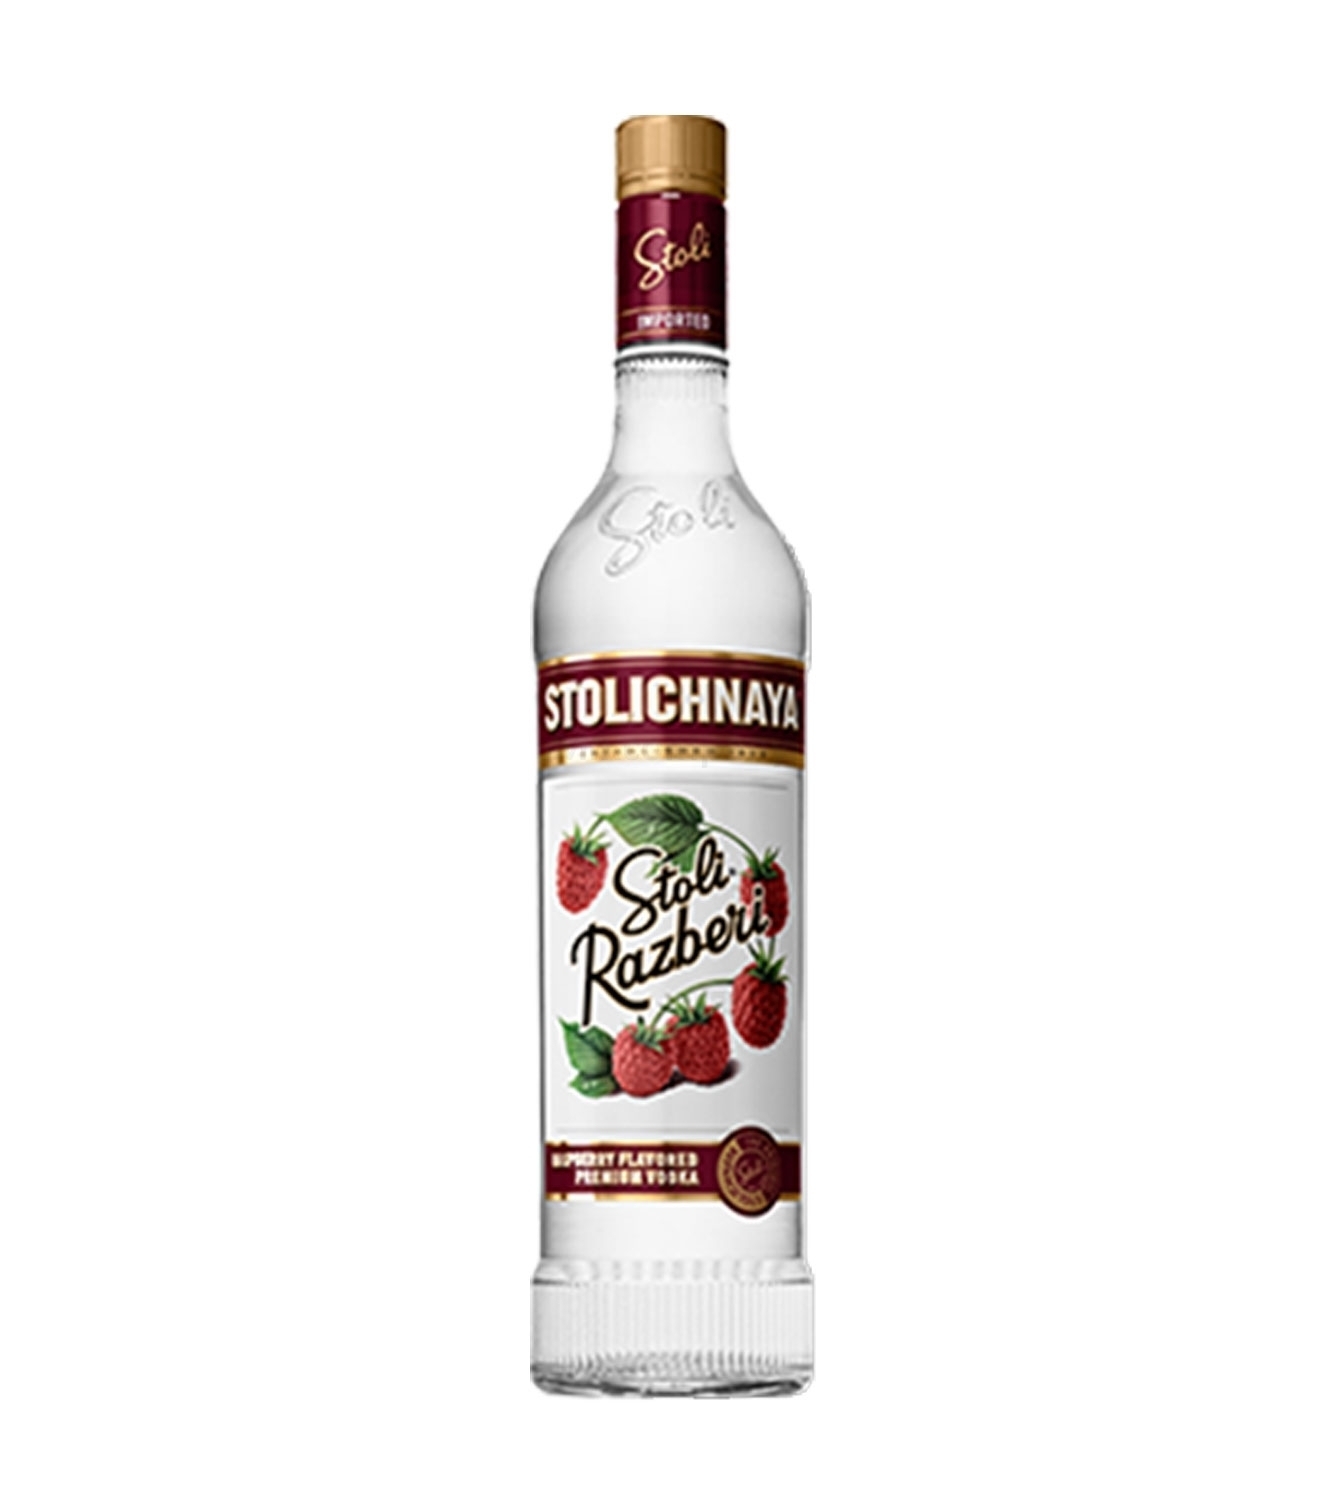 Stolichnaya Stoli Razberi Flavored Premium Vodka 0,7l 700ml (37,5% Vol) -[Enthält Sulfite]